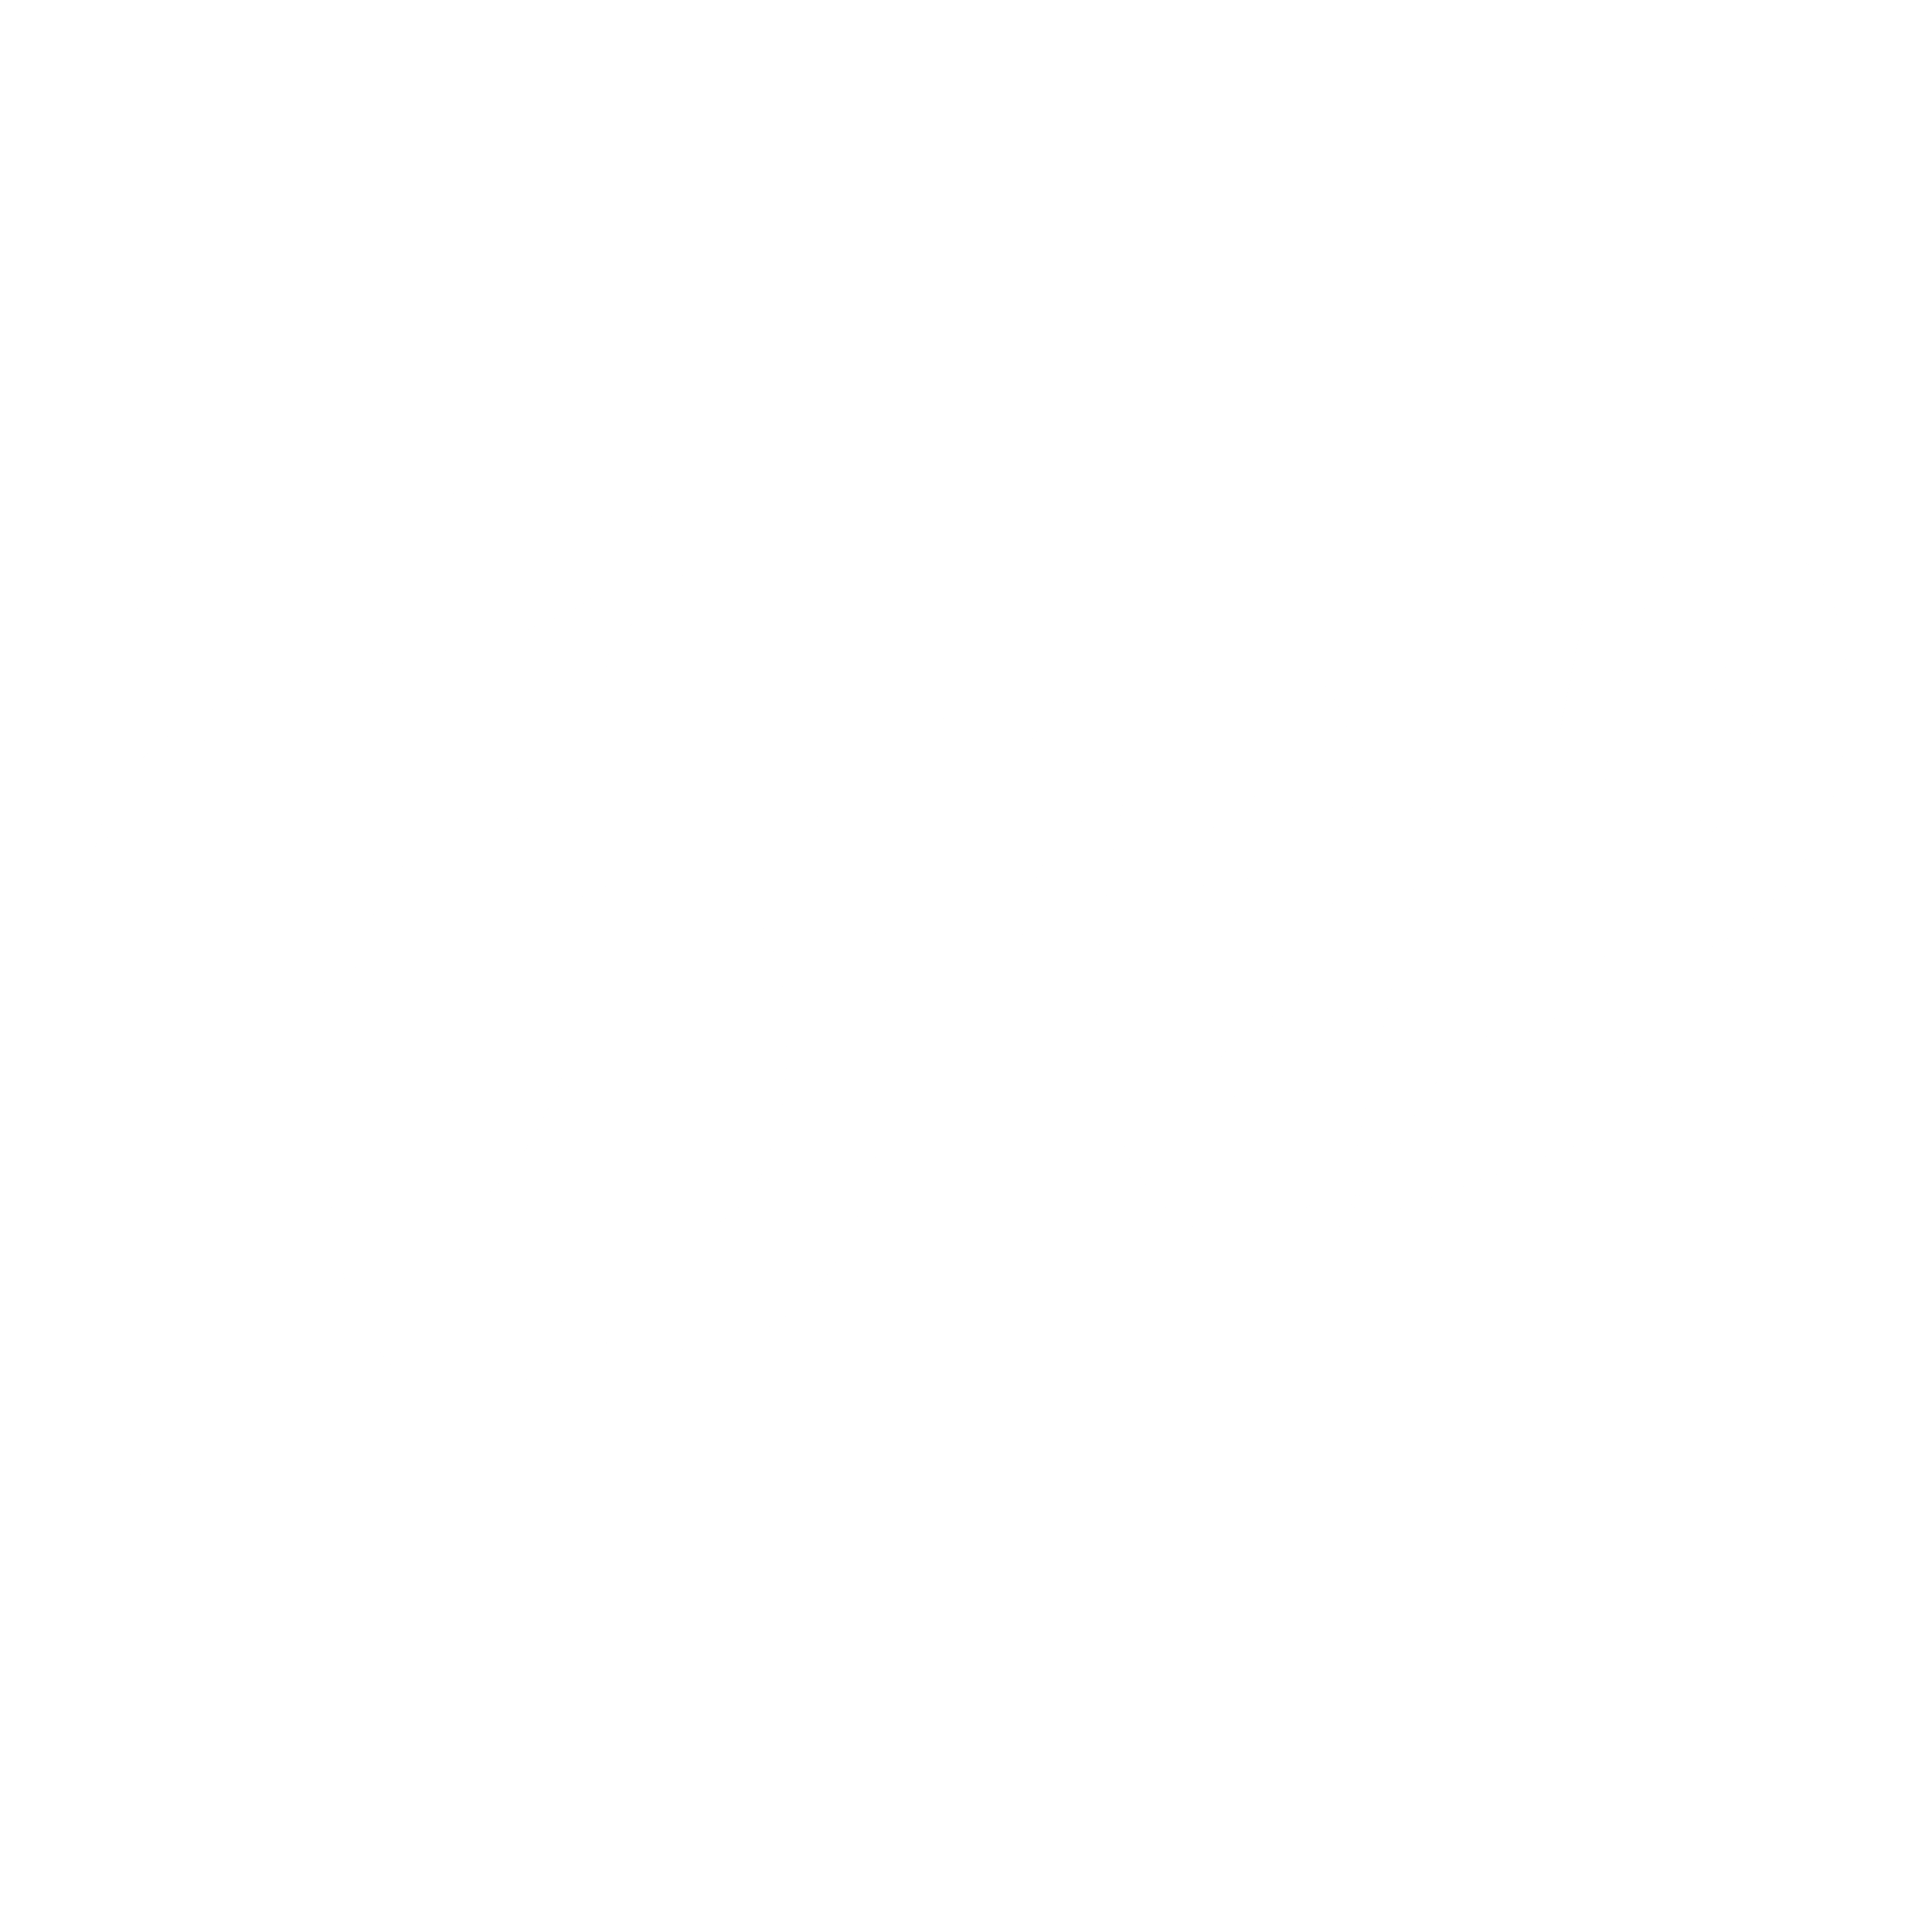 Febreze Logo - Febreze Logo PNG Transparent & SVG Vector - Freebie Supply